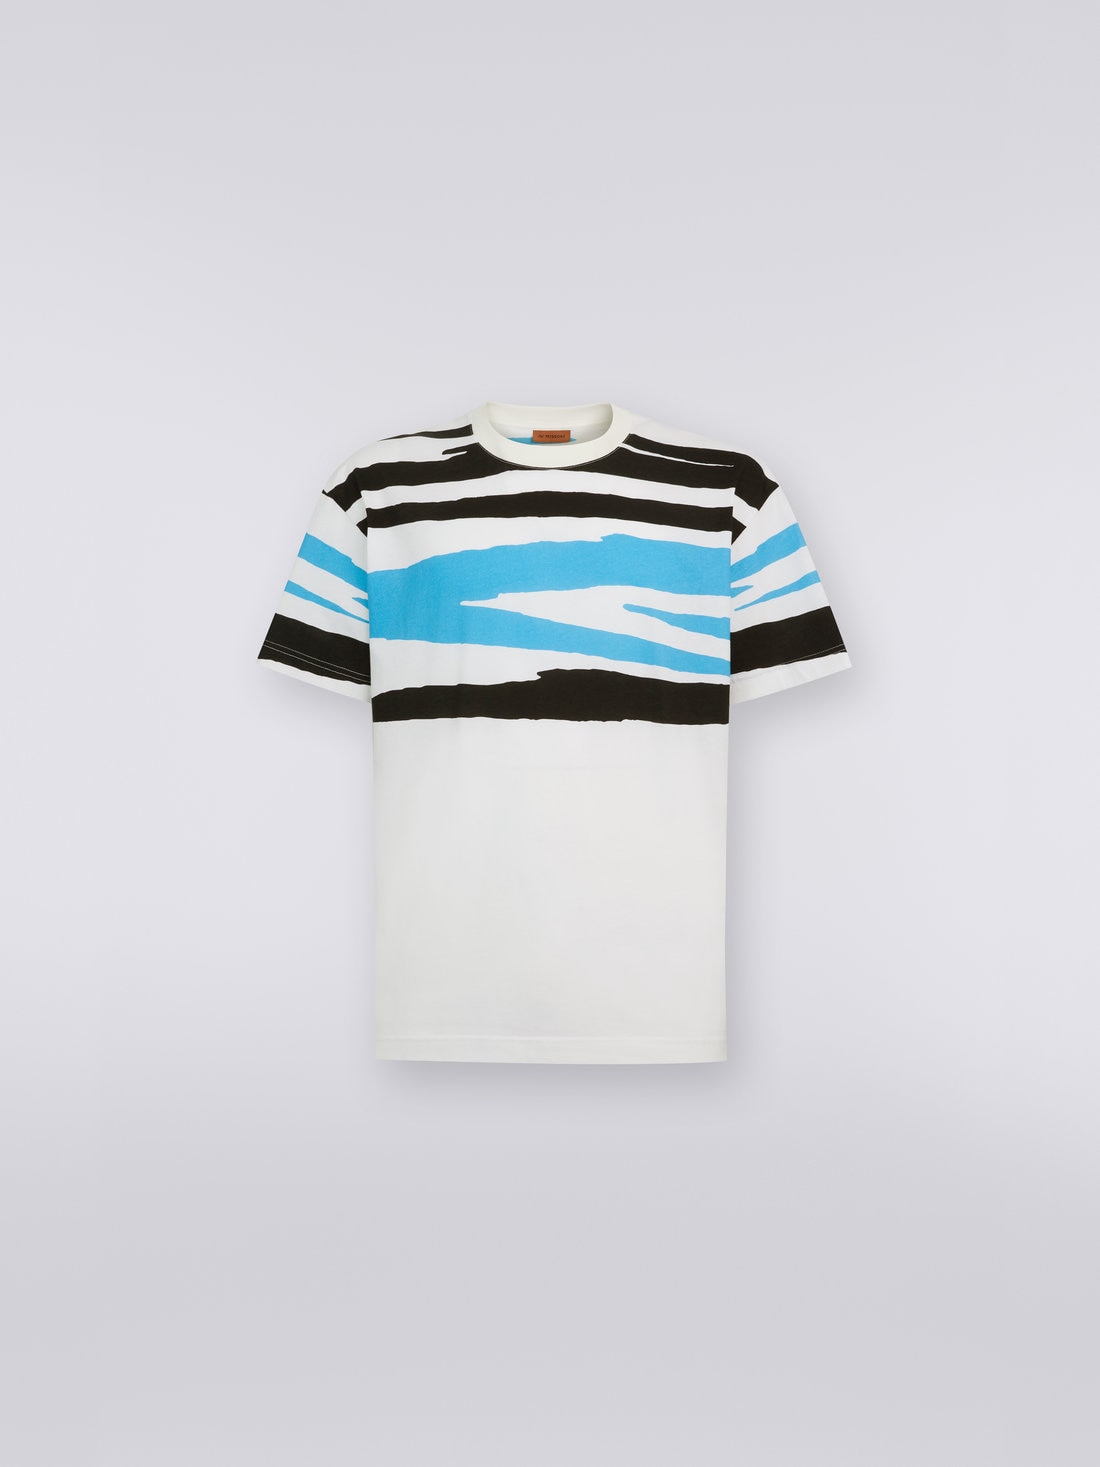 Rundhals-T-Shirt aus Baumwolljersey in Flammgarnoptik, Weiß, Schwarz & Blau   - US23SL19BJ00F3S728V - 0